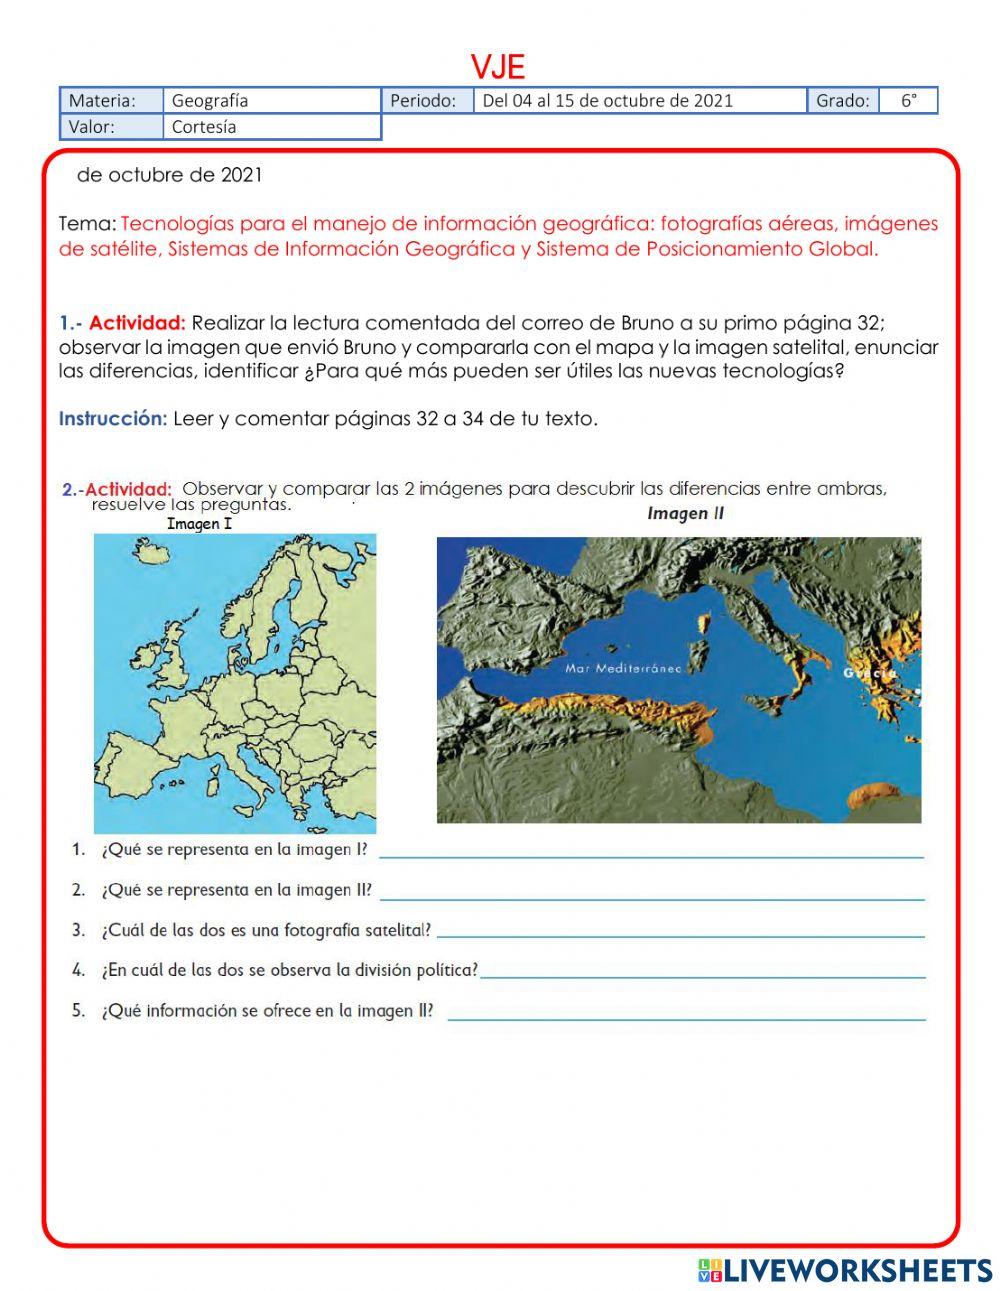 Tecnologías para el manejo de información geográfica. online exercise for